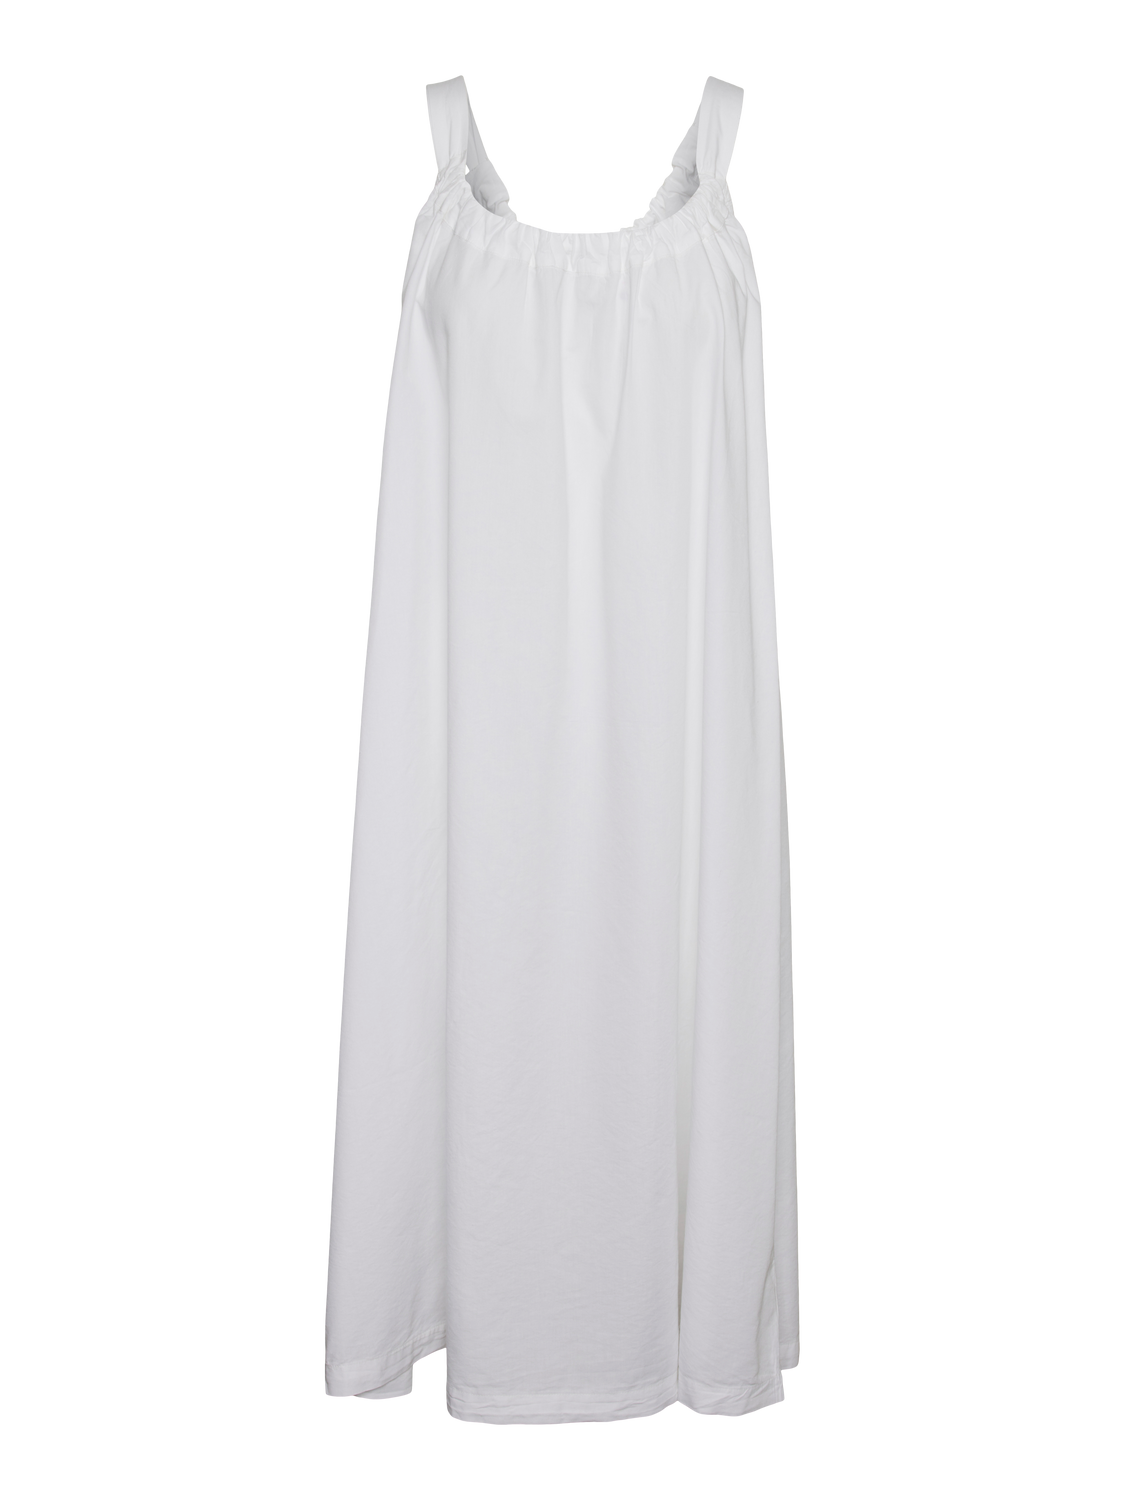 VMGILI Dress - Bright White